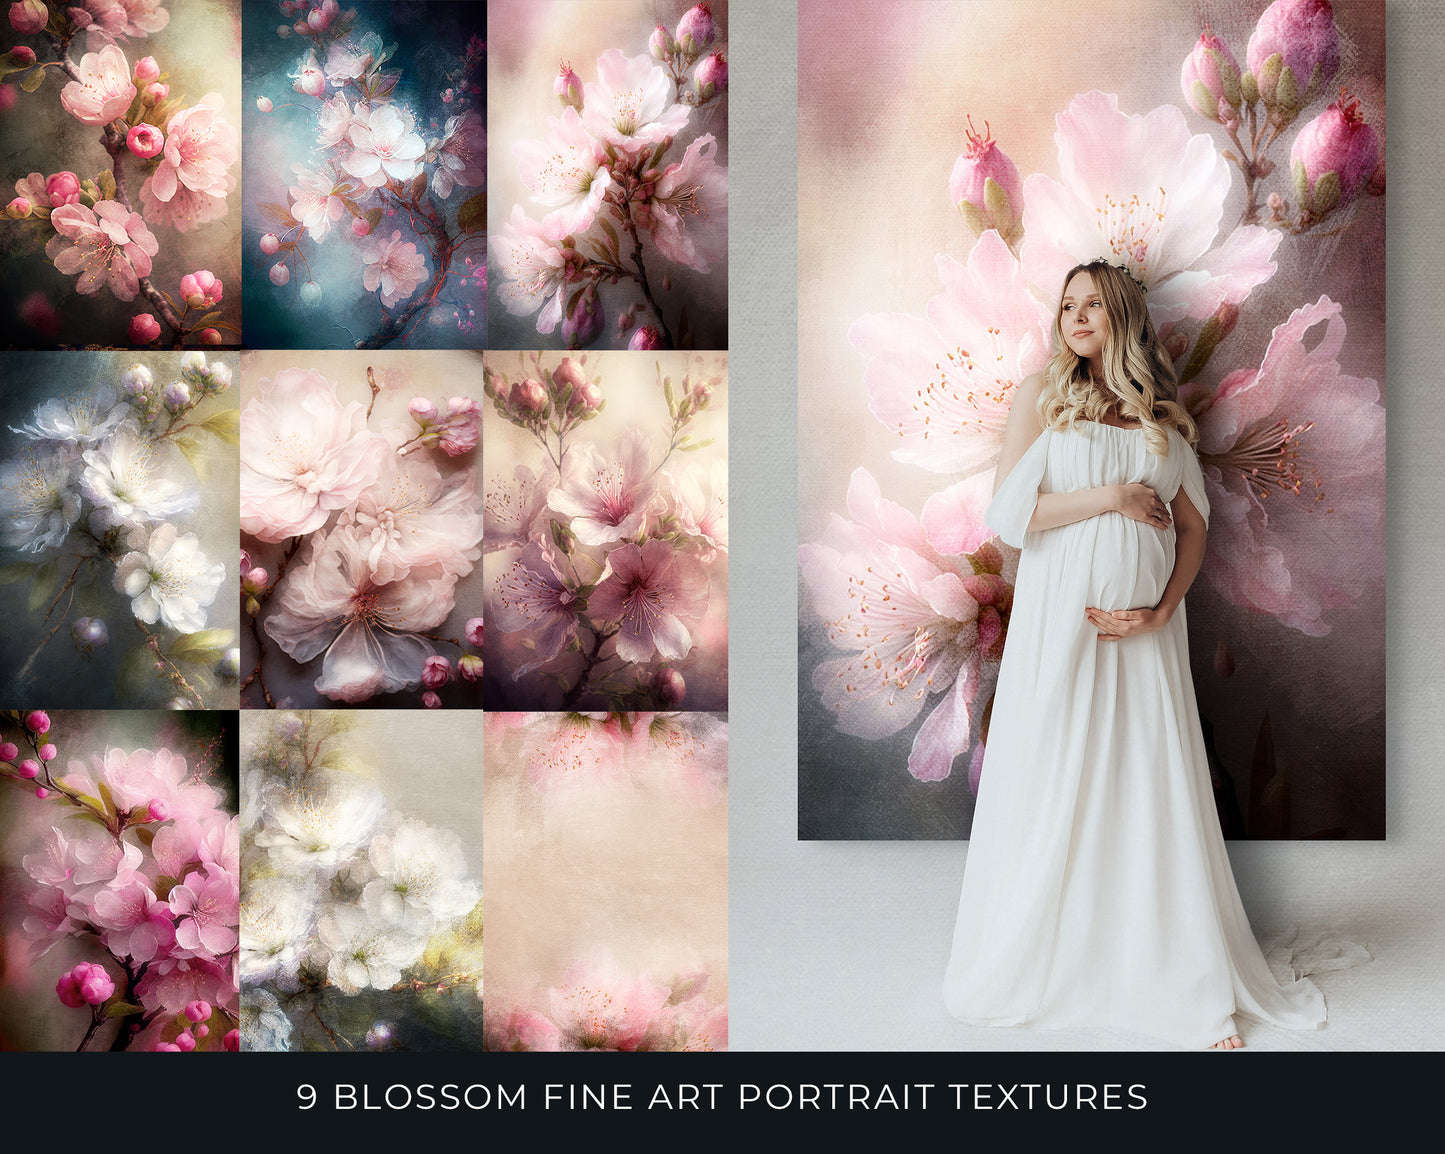 9 Blossom Fine Art Portrait Textures